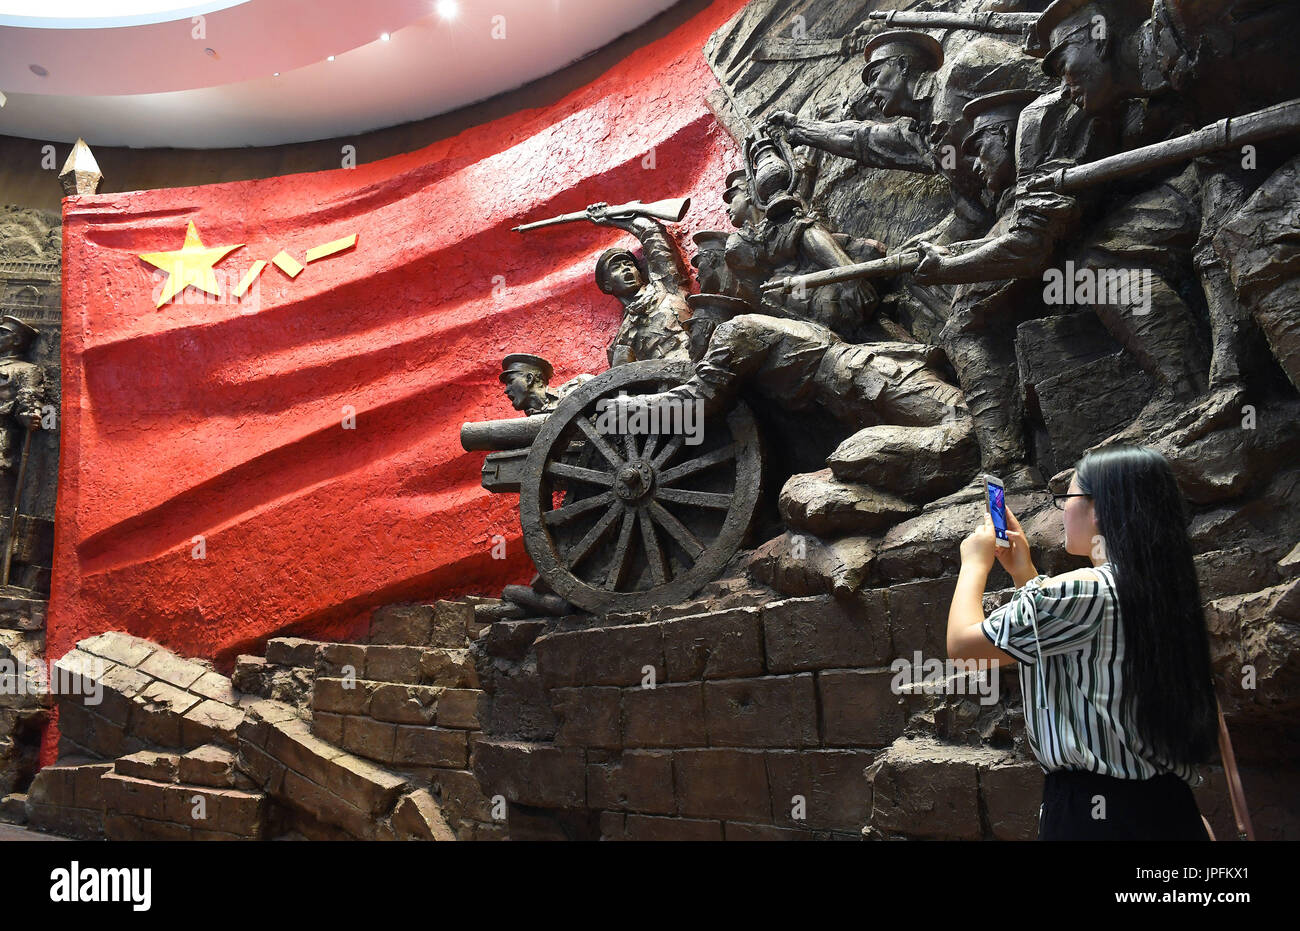 Nanchang, luglio 28. 1 agosto, 1927. Un turista in visita alla Memorial Hall sullo storico Nanchang Uprising di Nanchang, a est della capitale cinese della provincia di Jiangxi, 28 luglio 2017. L'Esercito di Liberazione del Popolo (PLA) è venuto un modo lungo dall'insurrezione armata da 20.000 soldati nella città di Nanchang il 1 agosto 1927. Credit: Wan Xiang/Xinhua/Alamy Live News Foto Stock